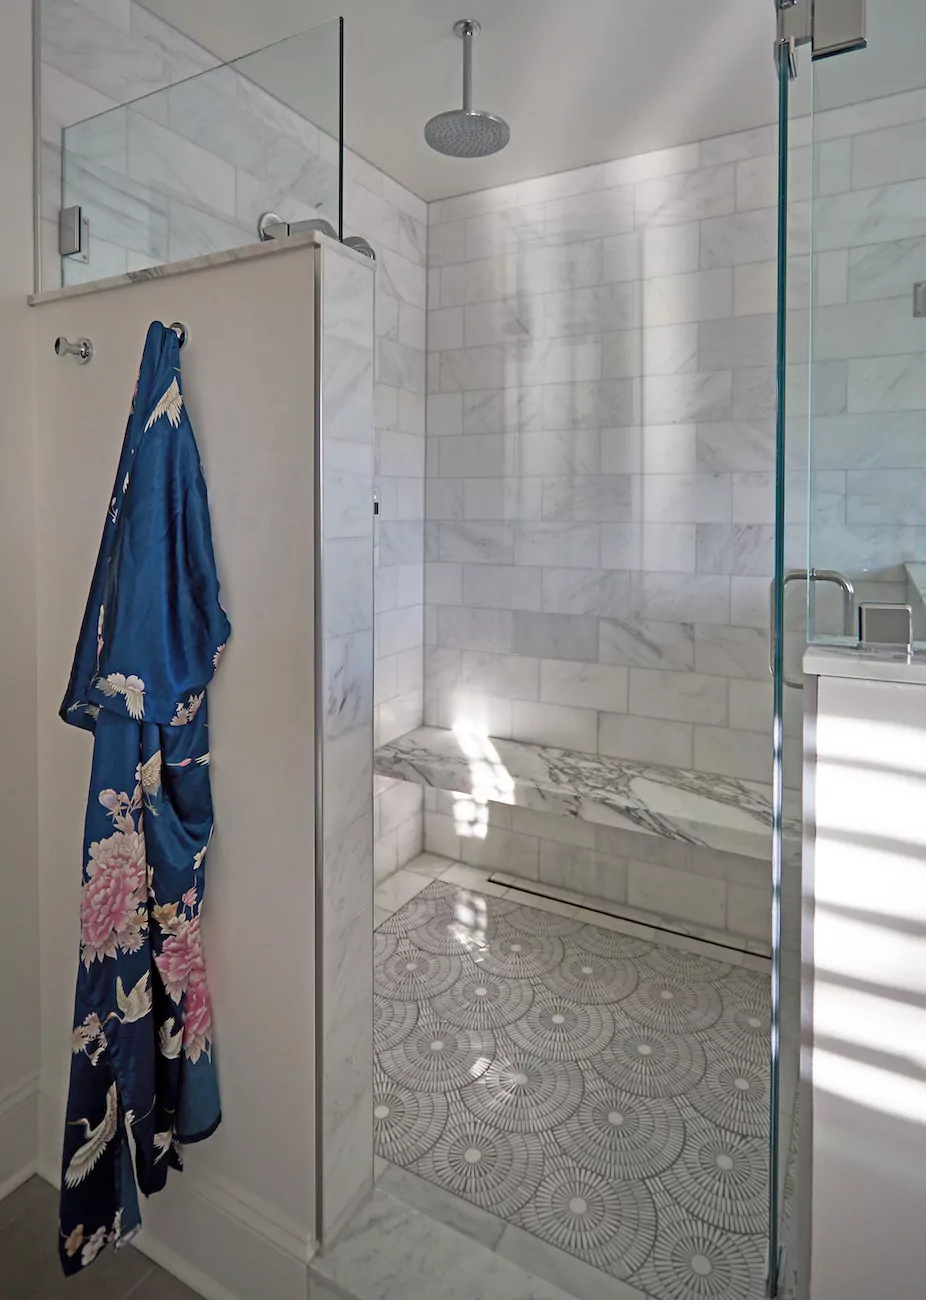 glass-shower-door-bench-tile-tks-design-studio